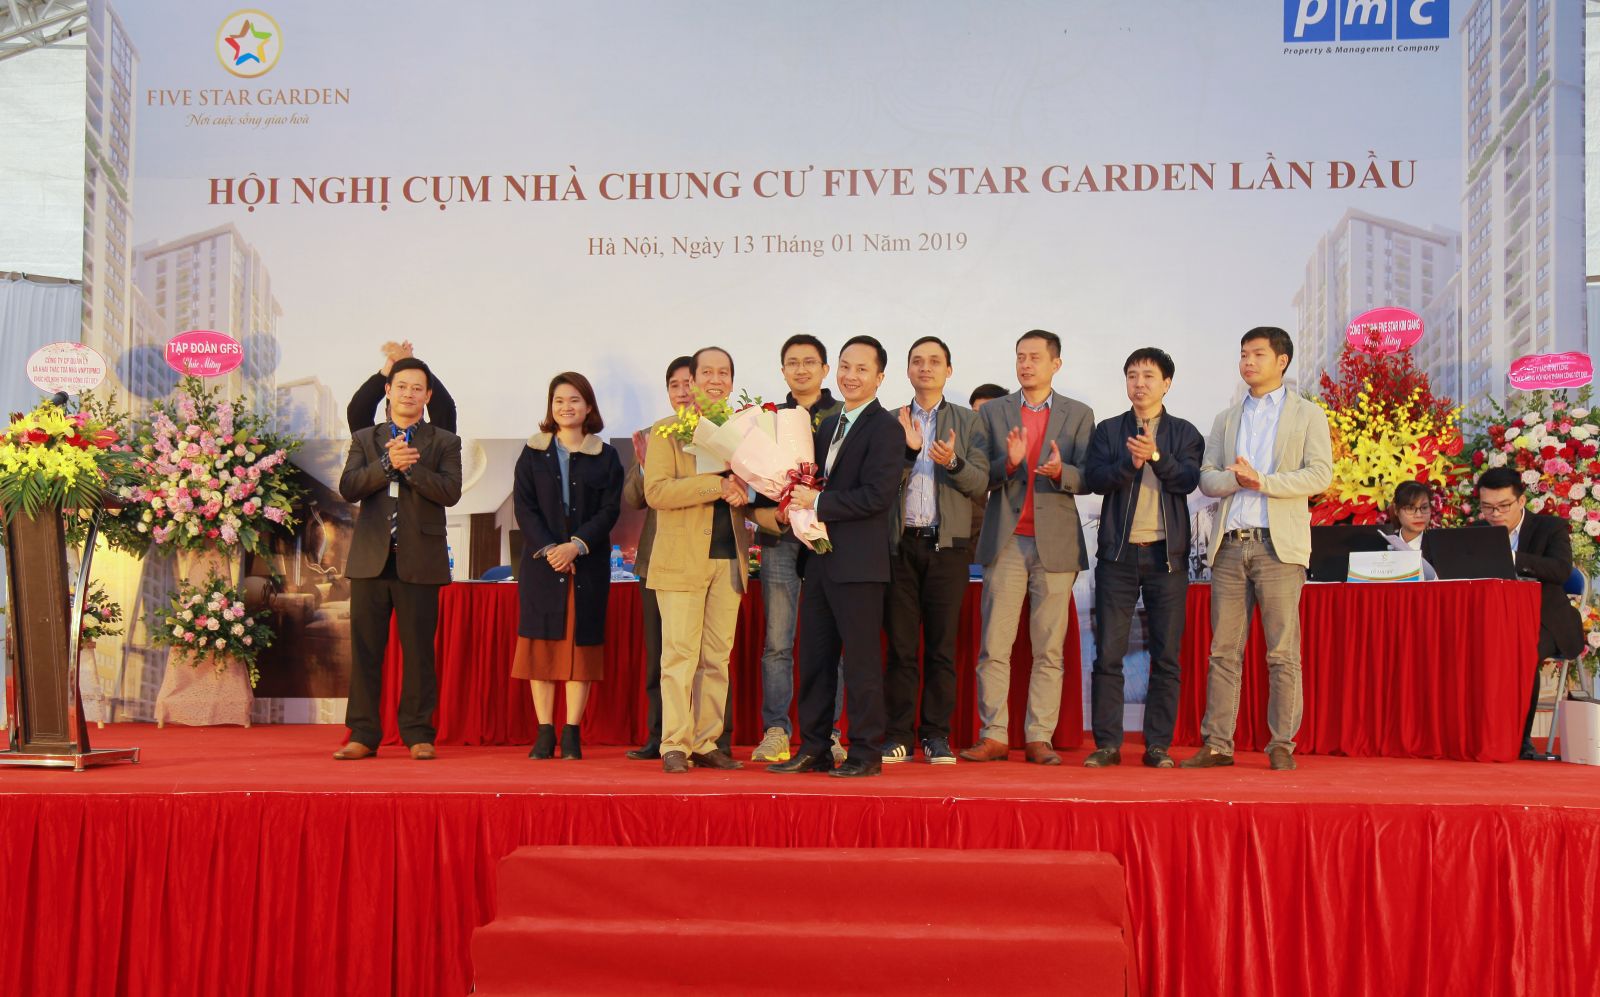 Ban quản trị chính thức Cụm nhà chung cư Five Star Garden ra mắt các chủ sở hữu 